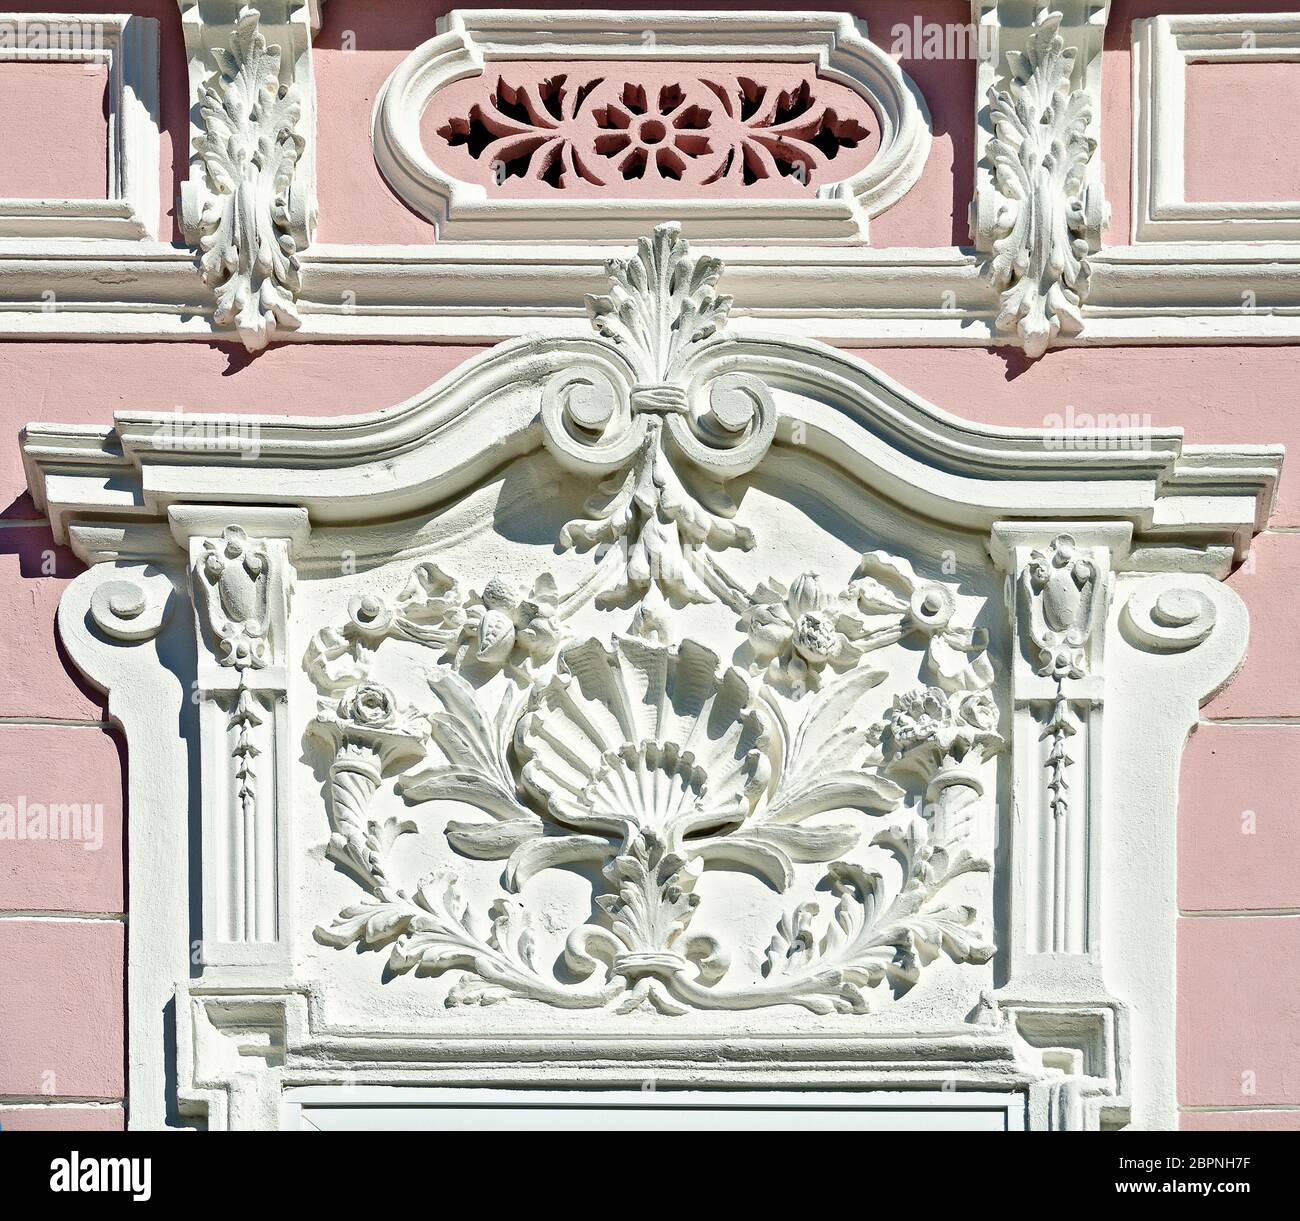 Decorazioni architettoniche bianche barocche con ornamenti e arabeschi sul fronte di una casa, Weitra, Austria Foto Stock